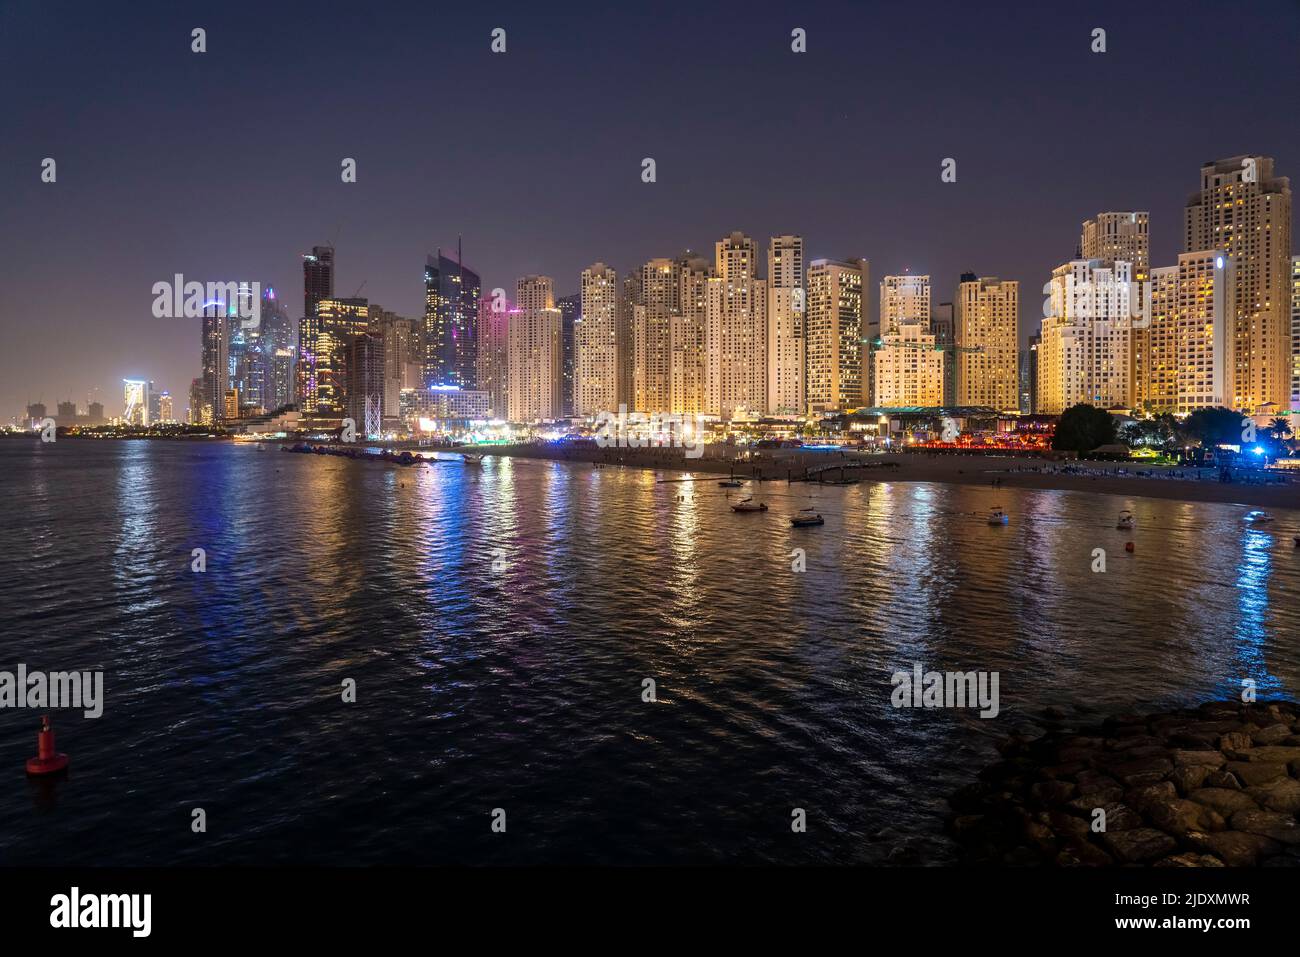 Emirats Arabes Unis, Dubaï, Skyline des appartements côtiers illuminés la nuit Banque D'Images